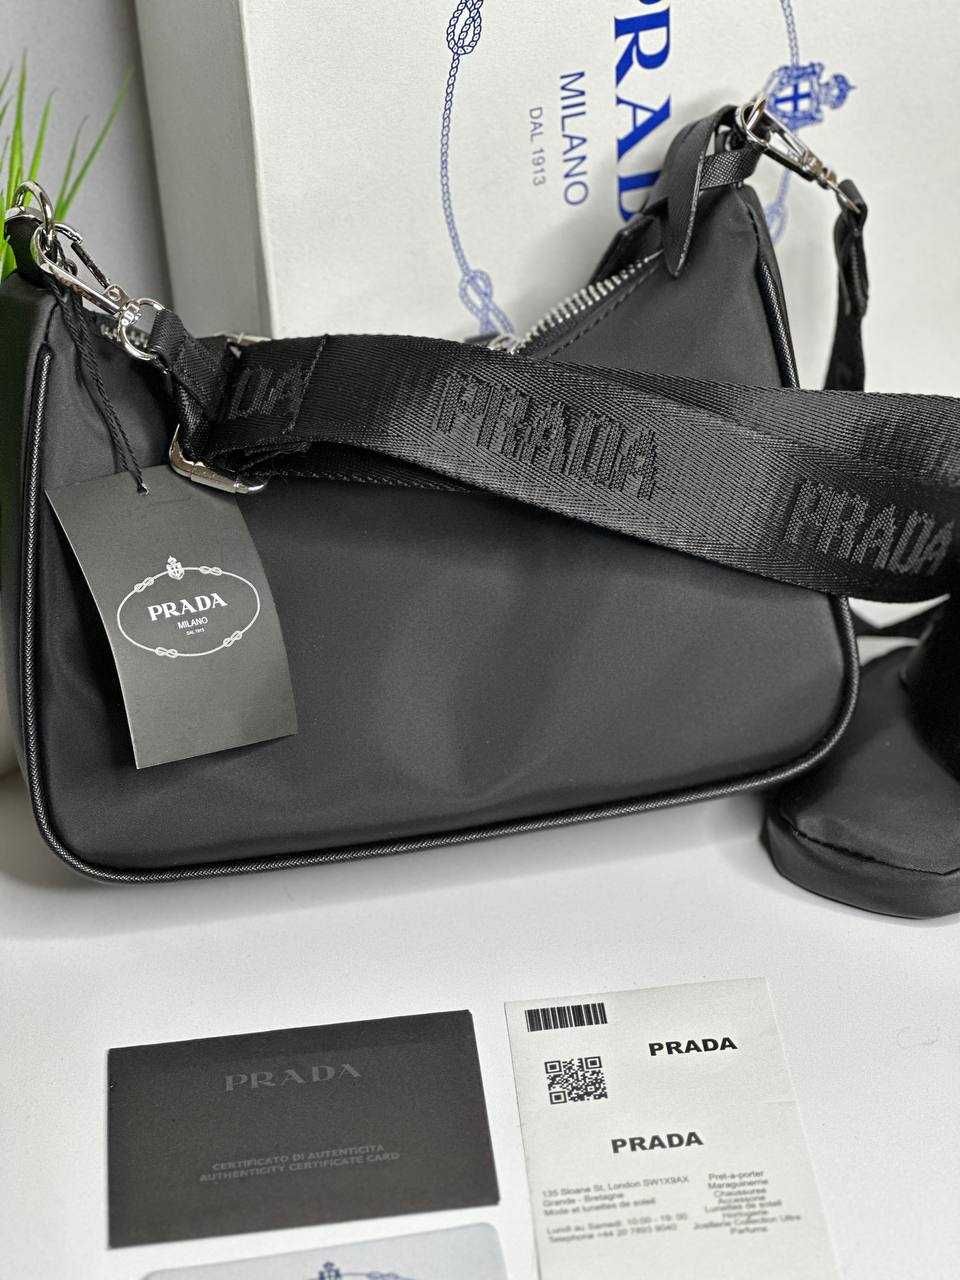 Женская сумка Prada Жіноча сумка Прада премиум класса (wb044)